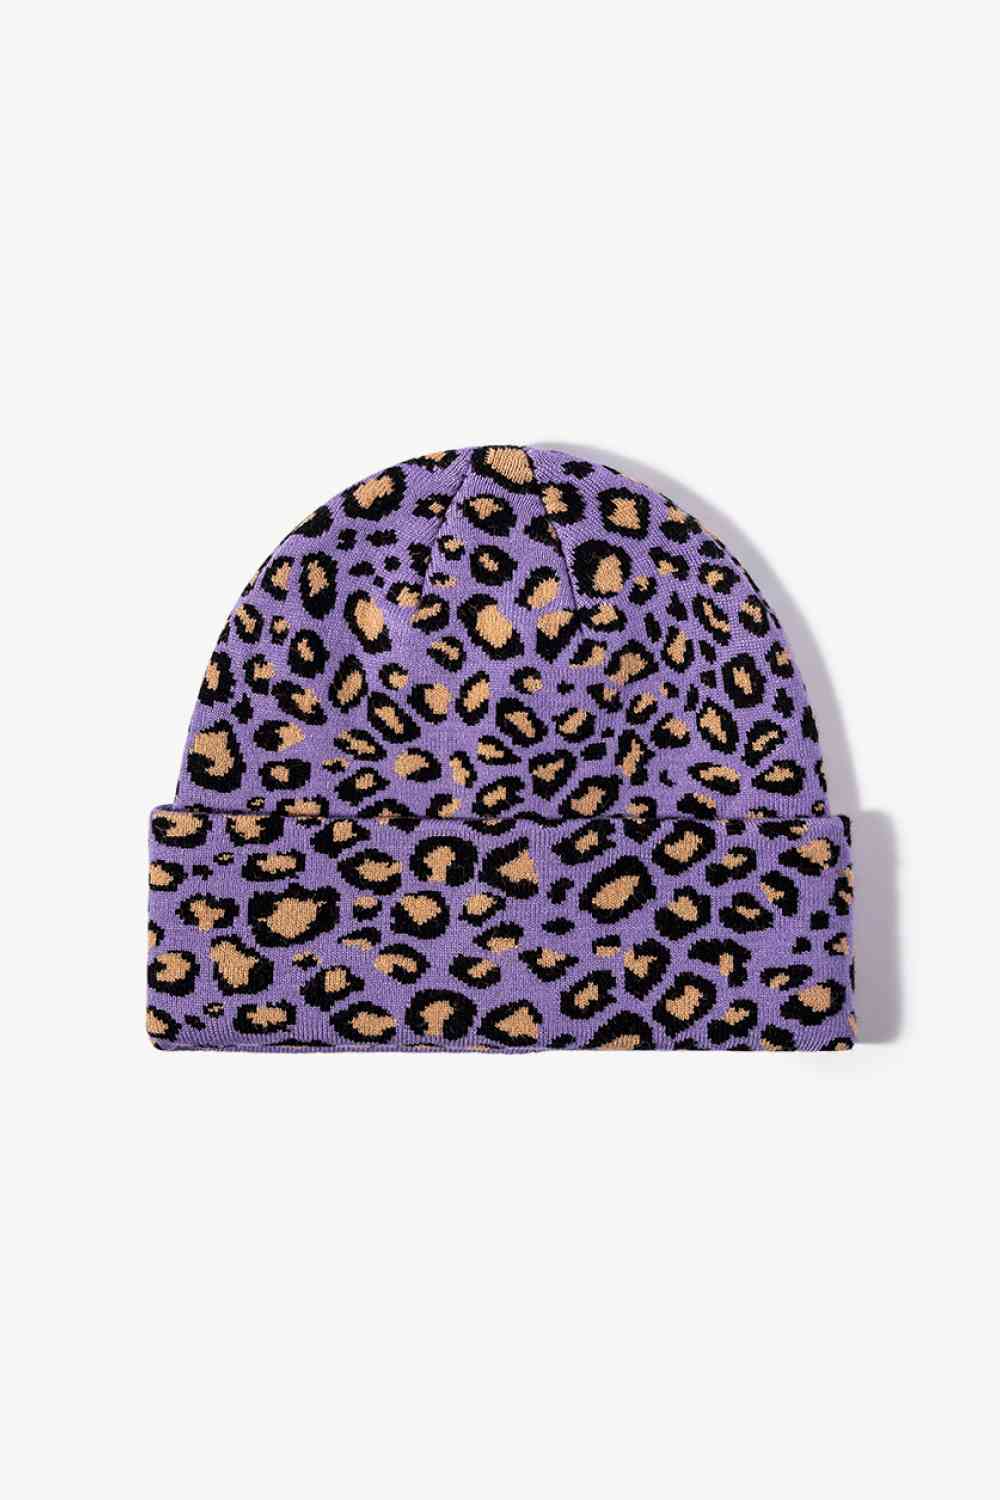 Leopard Pattern Cuffed Beanie Purple One Size